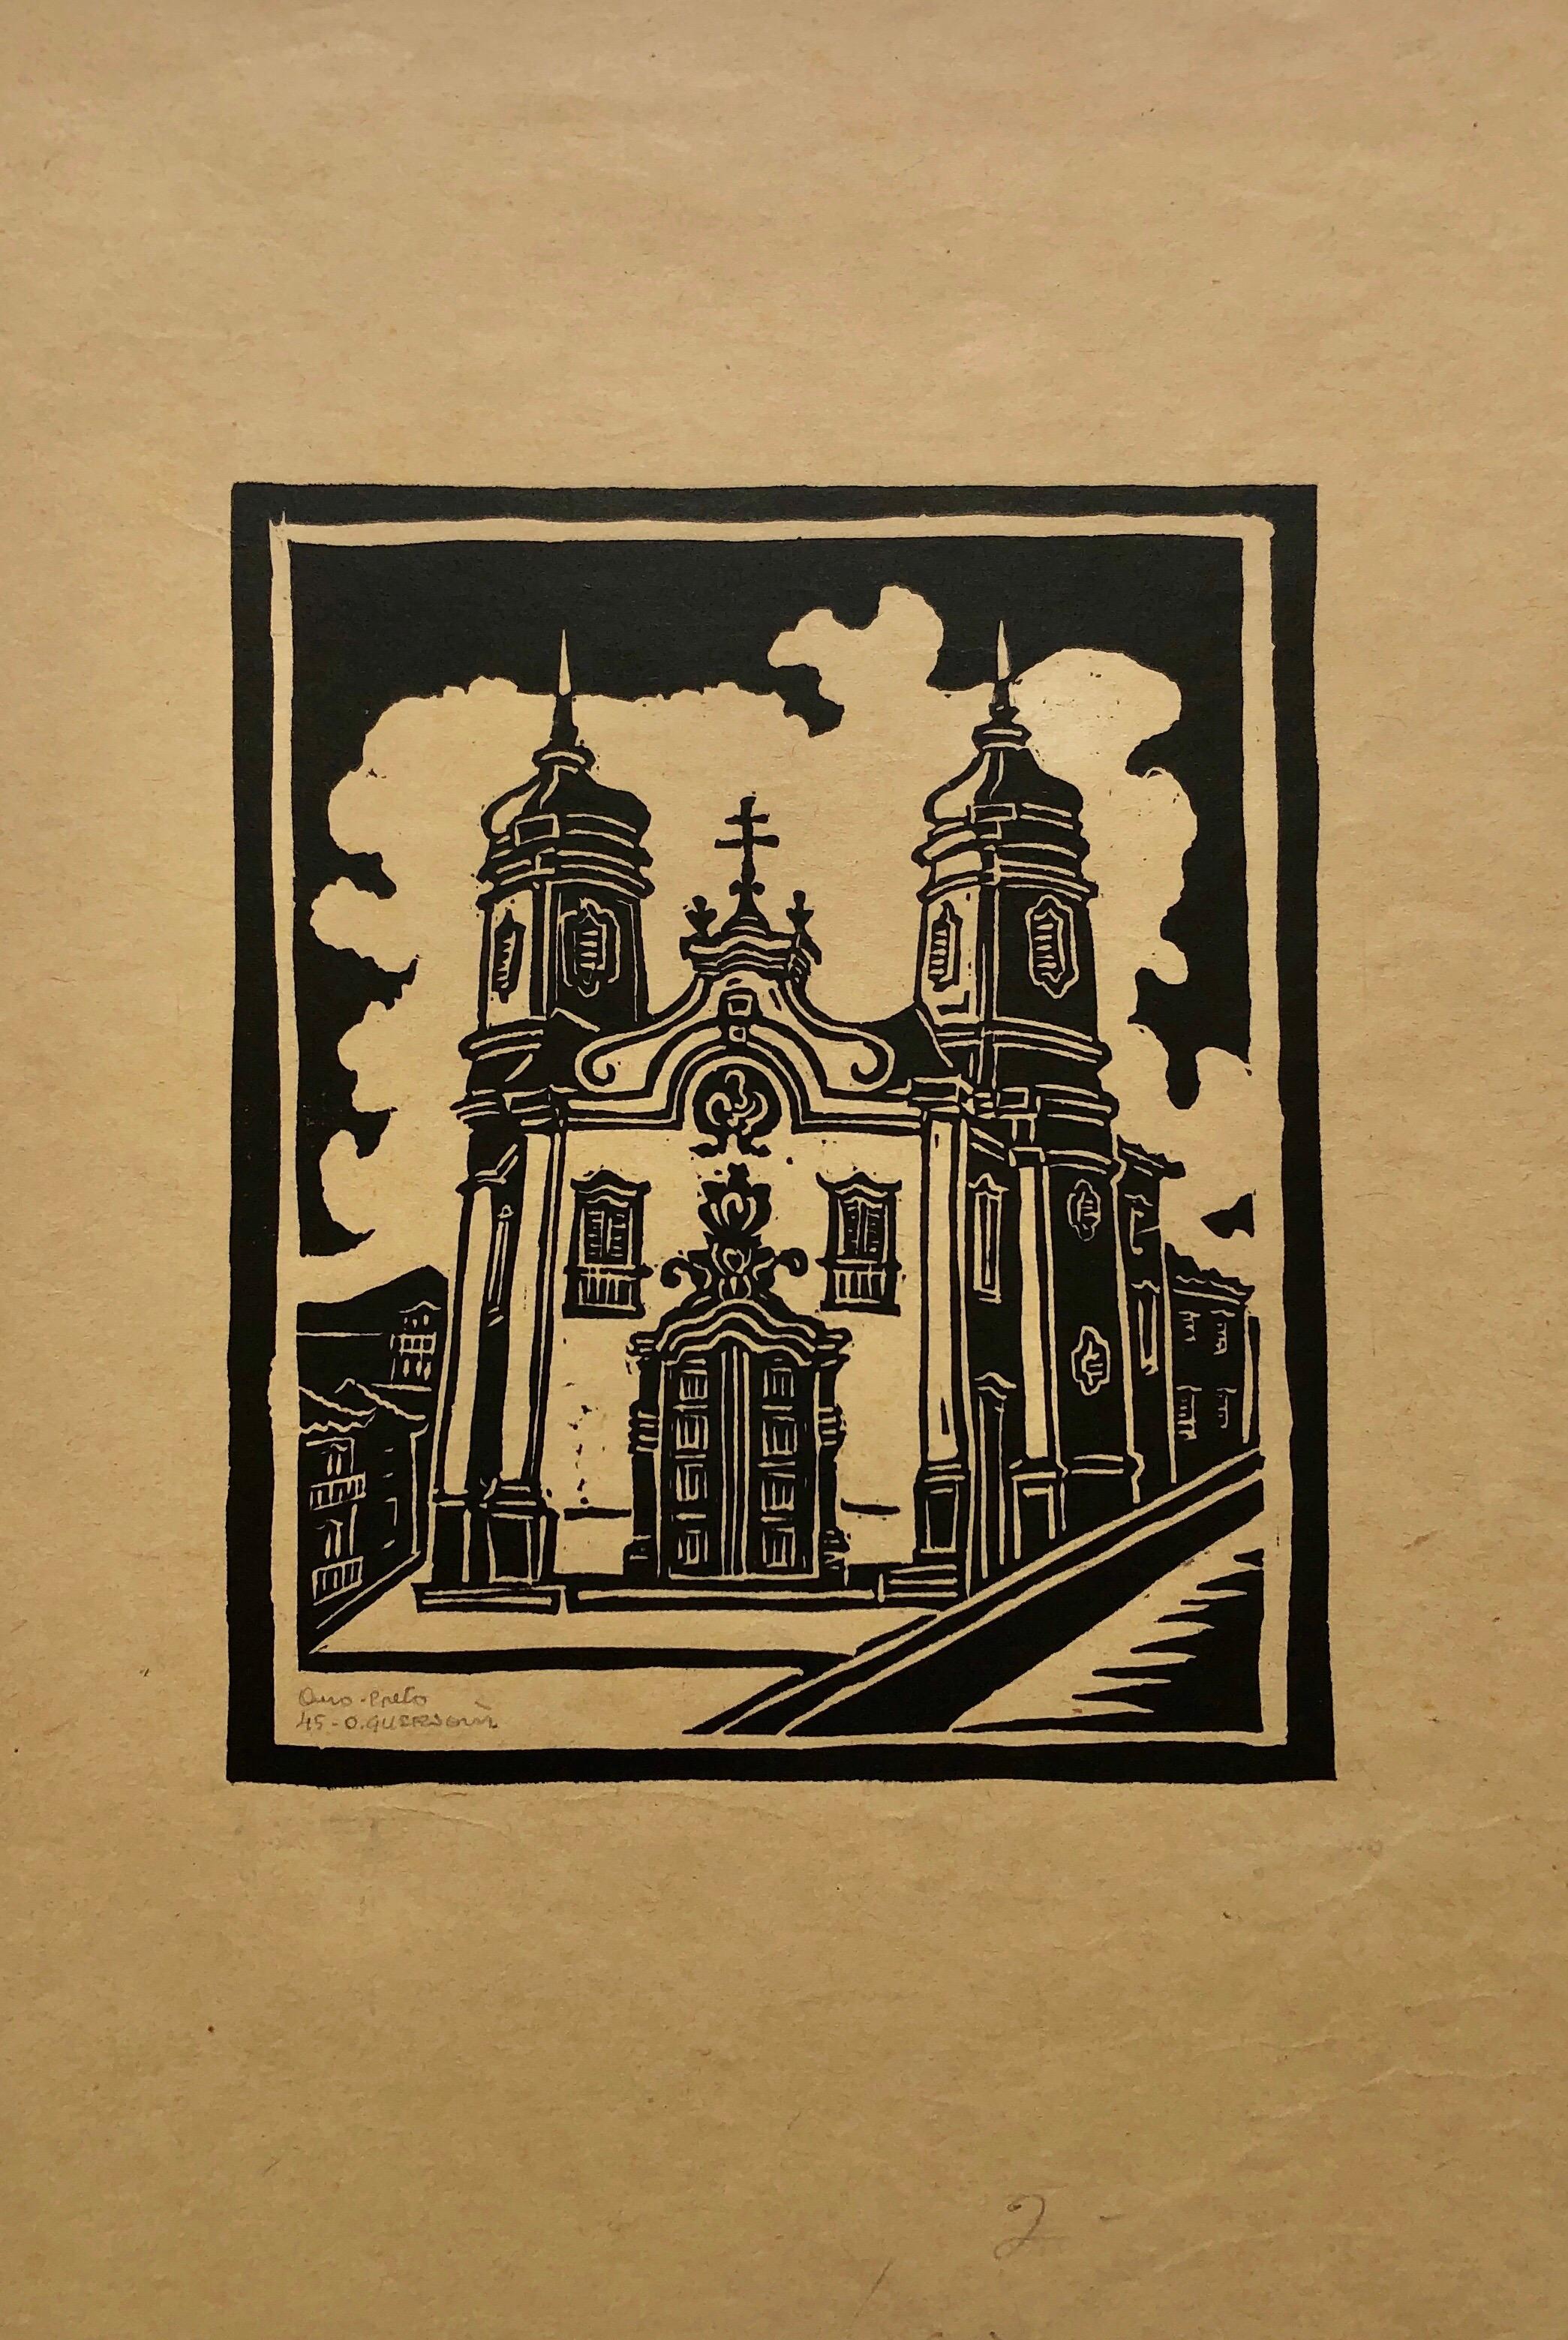 Odetto Guersoni Figurative Print - 1945 Brazilian Master, Art Deco Serigraph Woodcut Colonial Architecture Mission